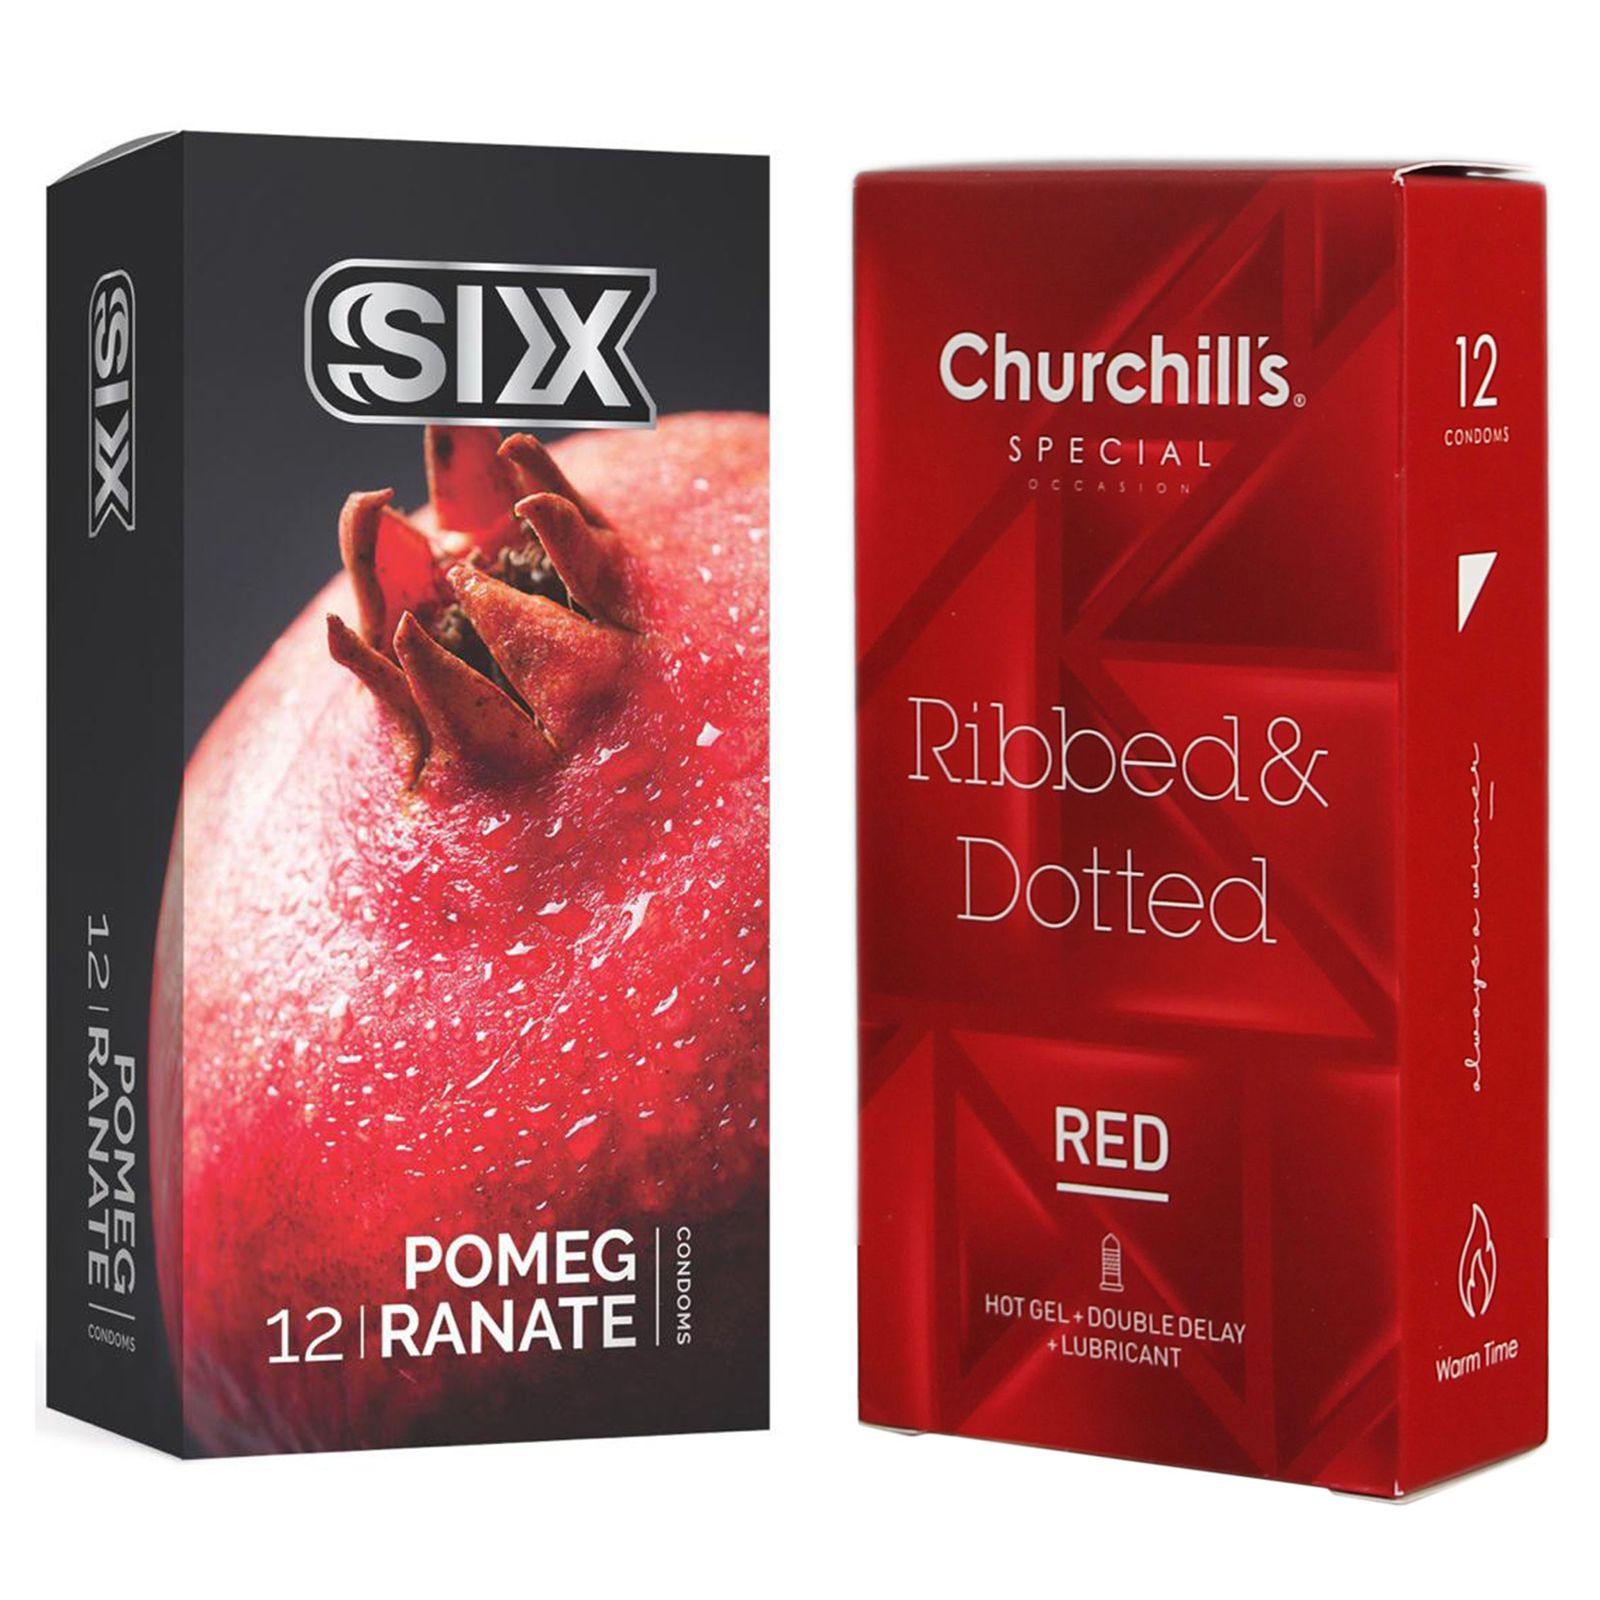 کاندوم چرچیلز مدل Ribbed & Dotted Red بسته 12 عددی به همراه کاندوم سیکس مدل انار بسته 12 عددی -  - 2